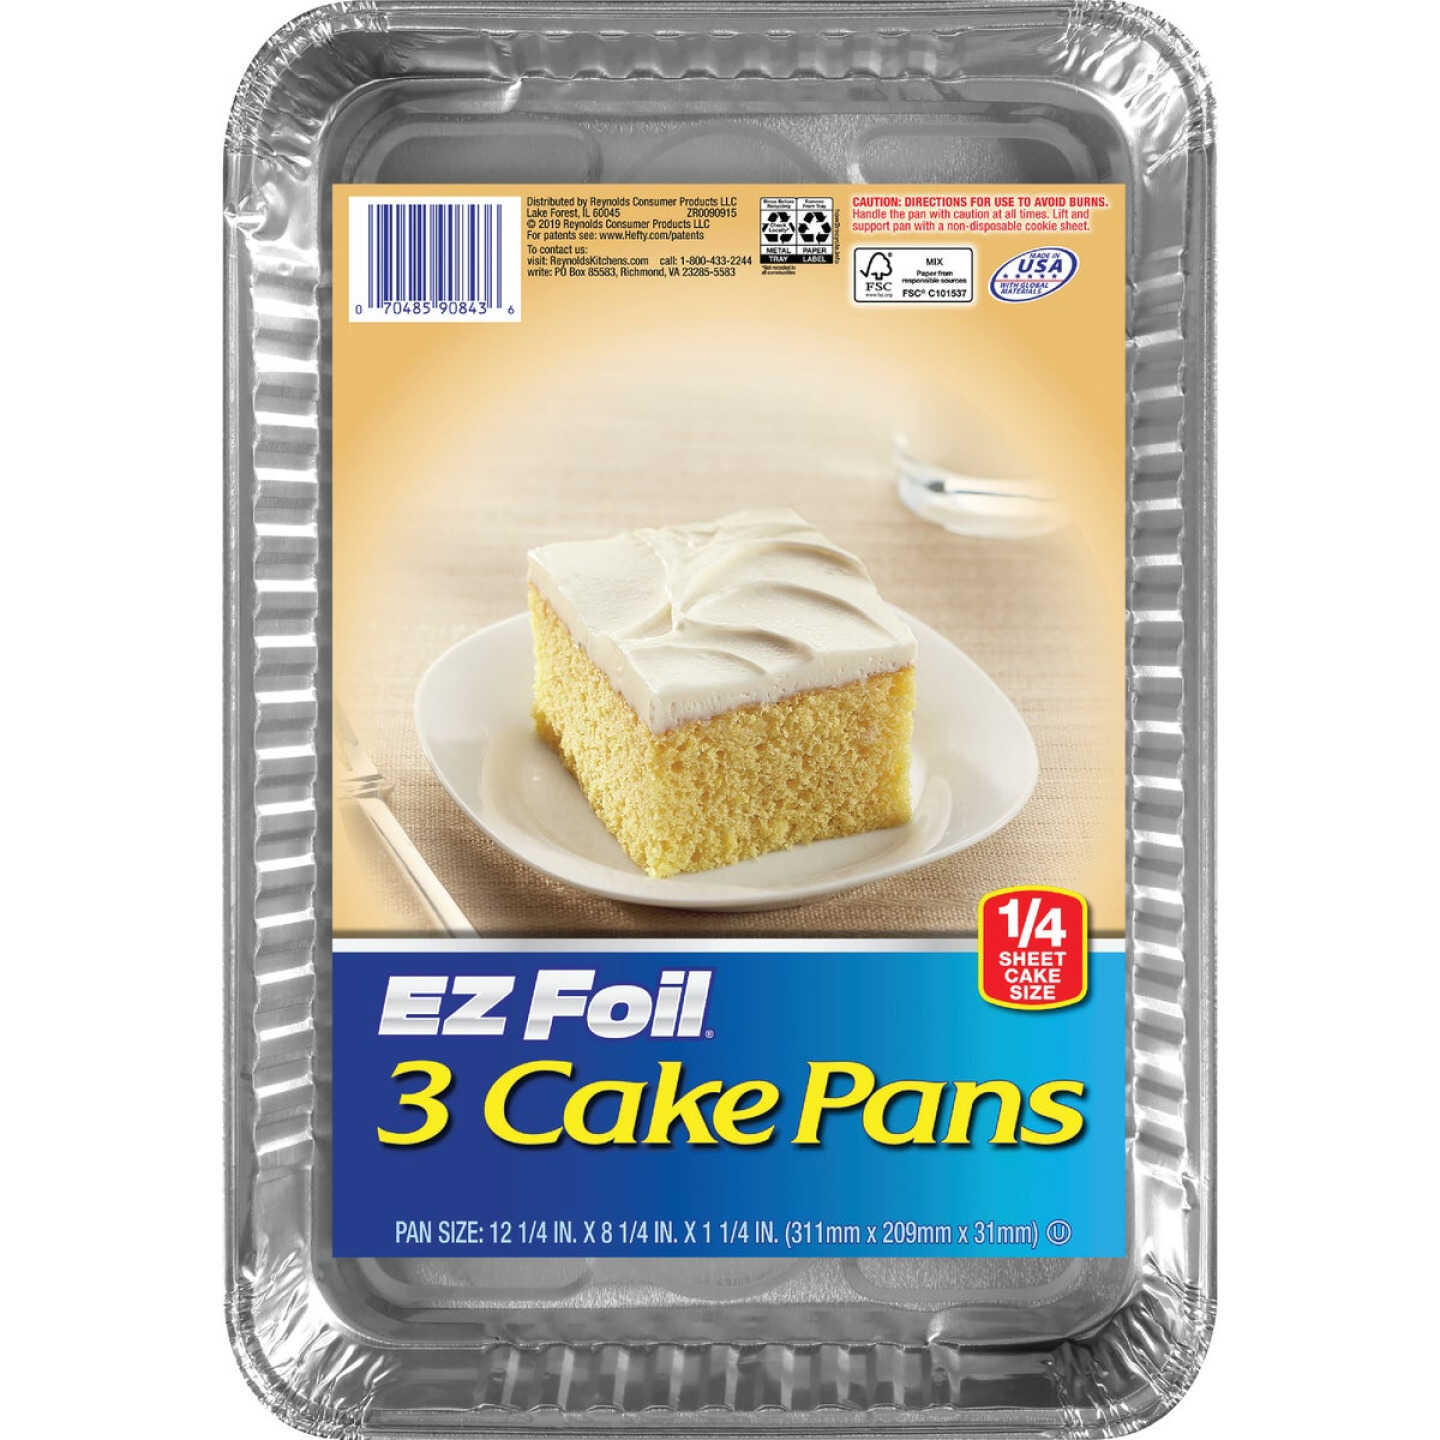 EZ Foil Casserole Pans - 2 count